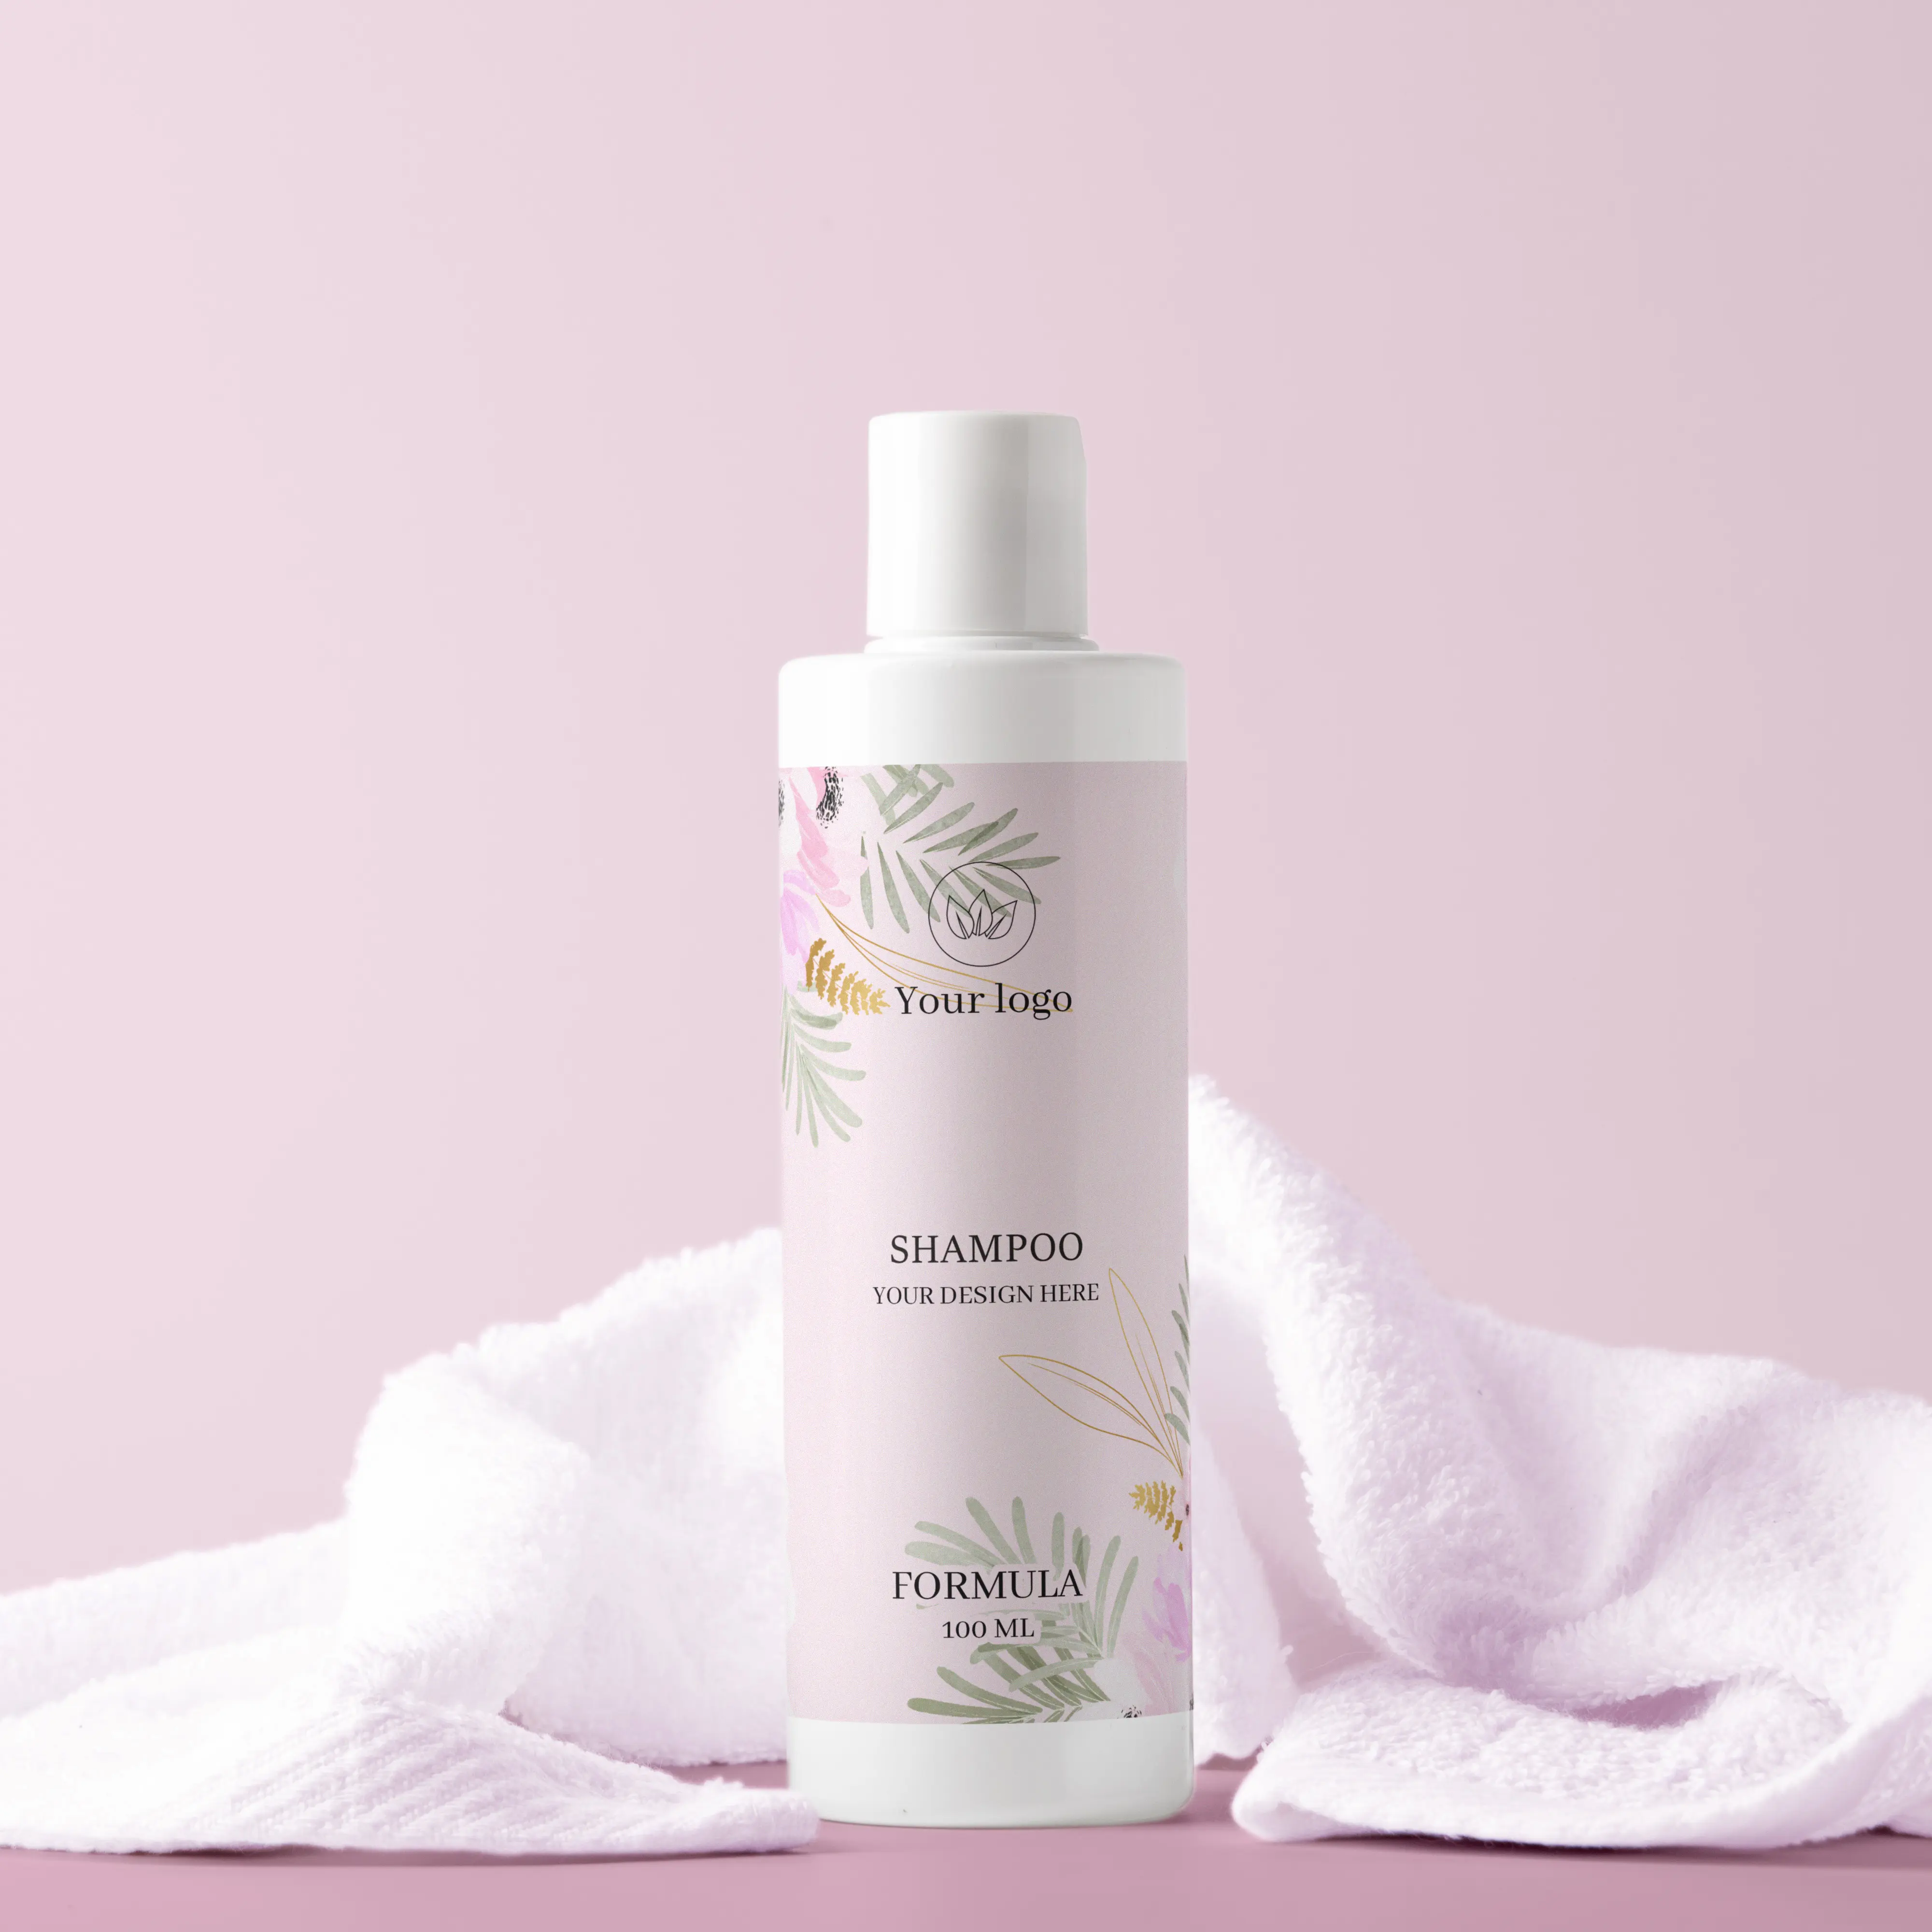 OEM ODM Private Label biologico naturale vegano senza solfati olio marocchino prodotti per la cura dei capelli Shampoo nutriente Anti prurito